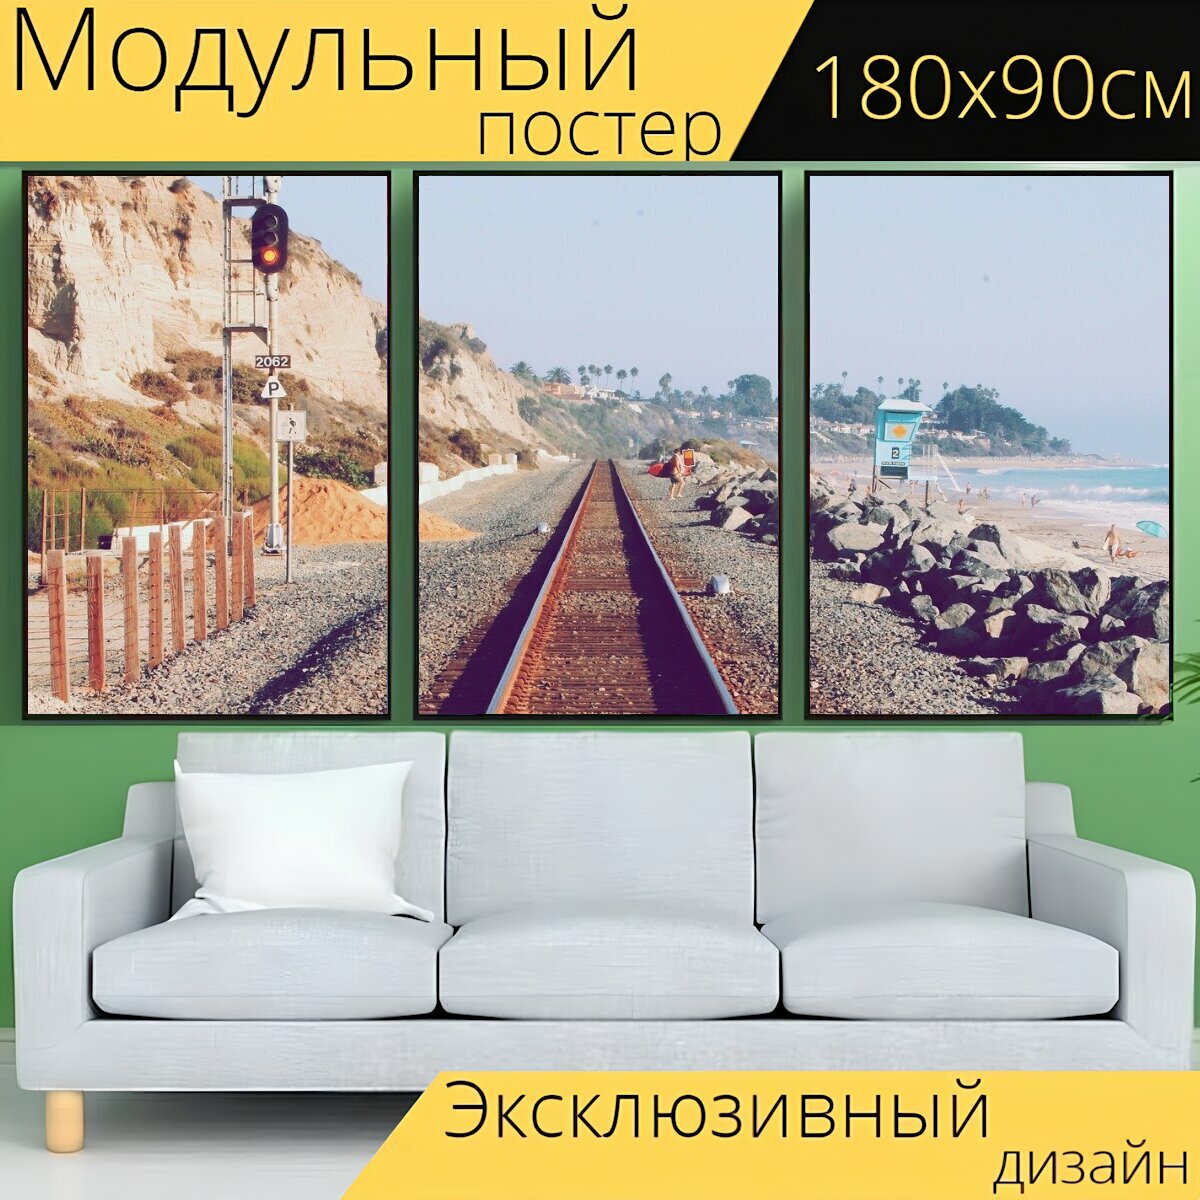 Модульный постер "Железная дорога, треки, железнодорожные пути" 180 x 90 см. для интерьера